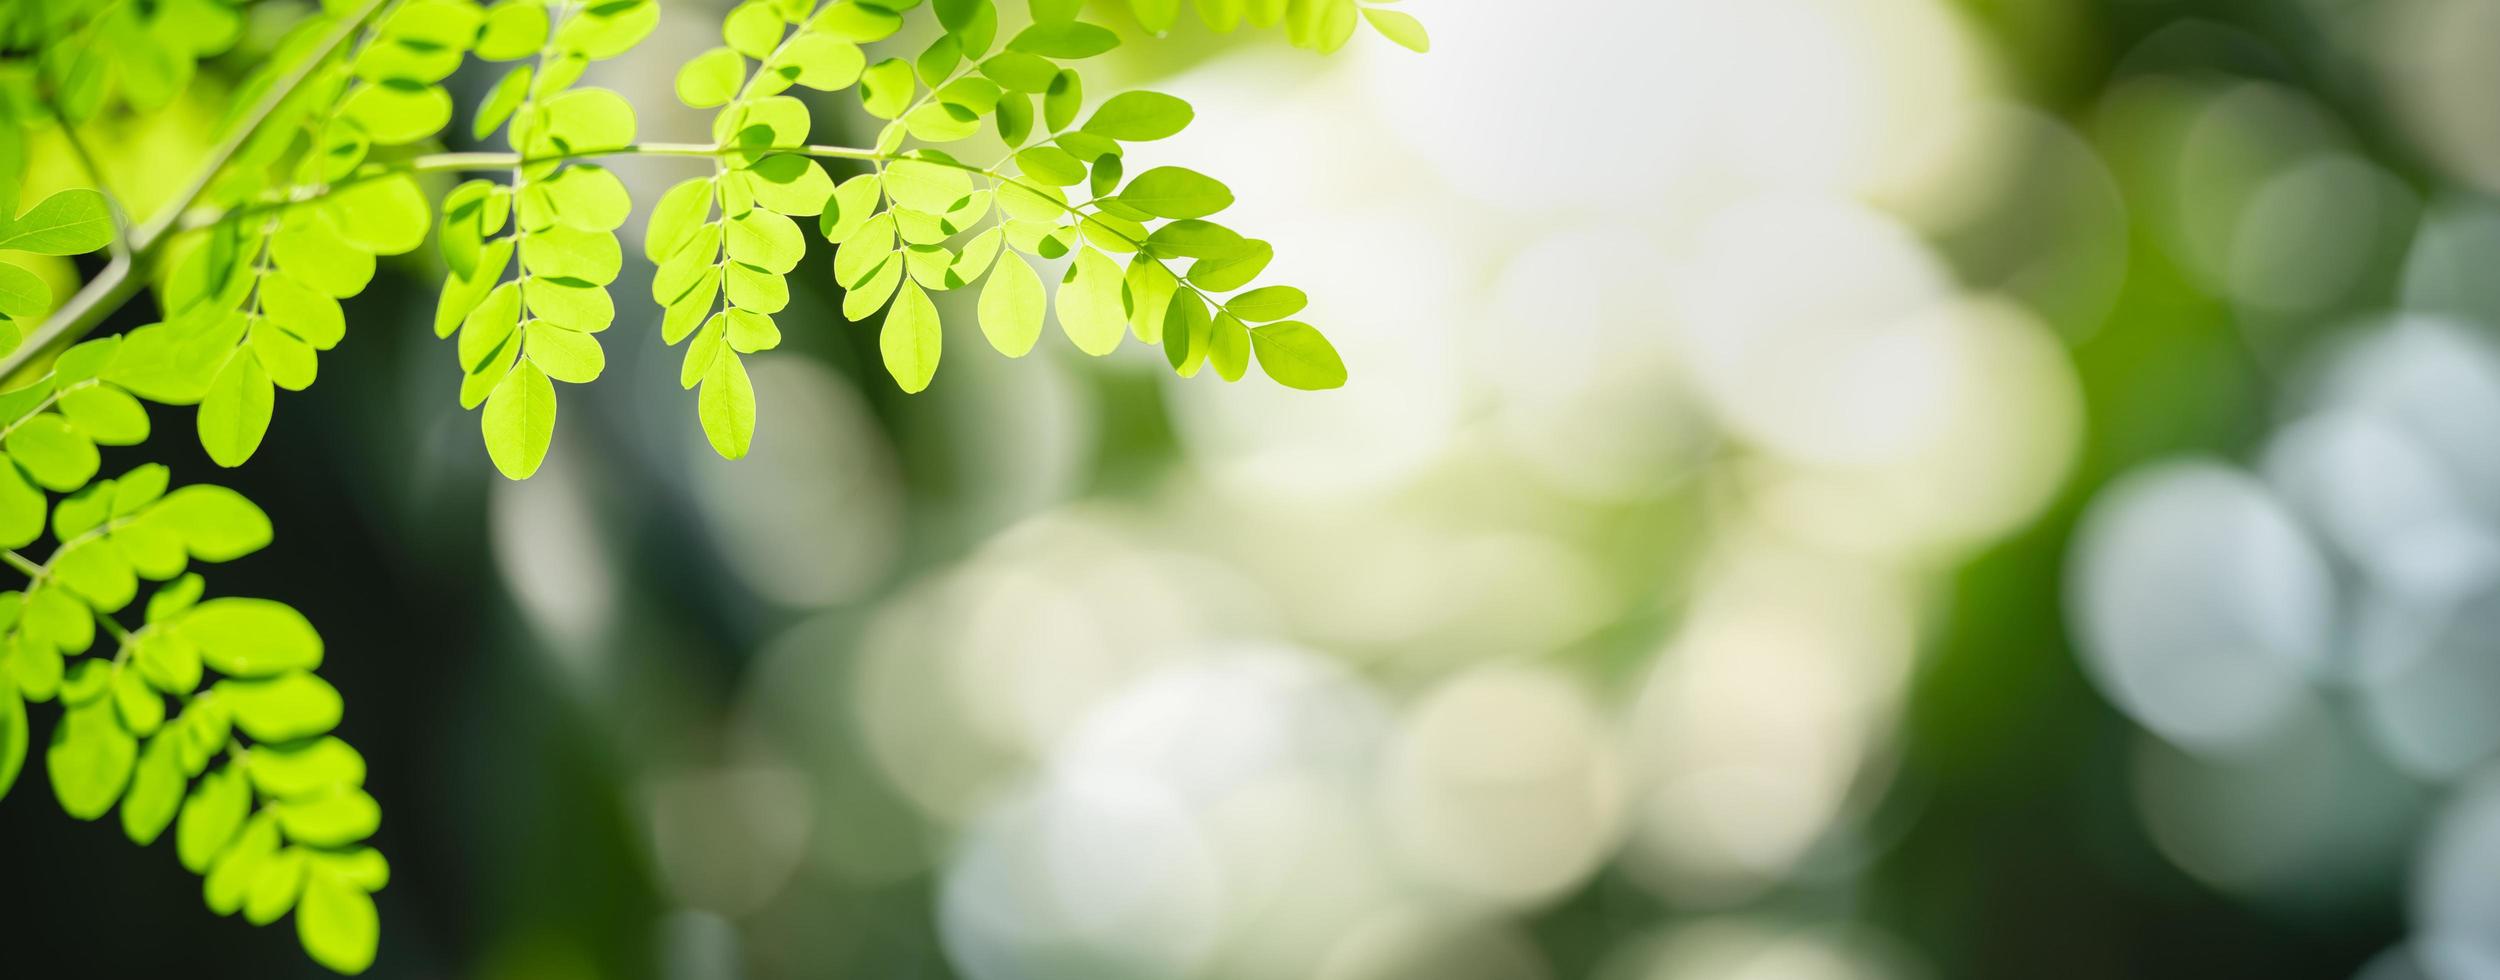 Nahaufnahme des grünen Blattes der schönen Naturansicht auf unscharfem grünem Hintergrund im Garten mit Kopienraum unter Verwendung als Hintergrunddeckblattkonzept. foto